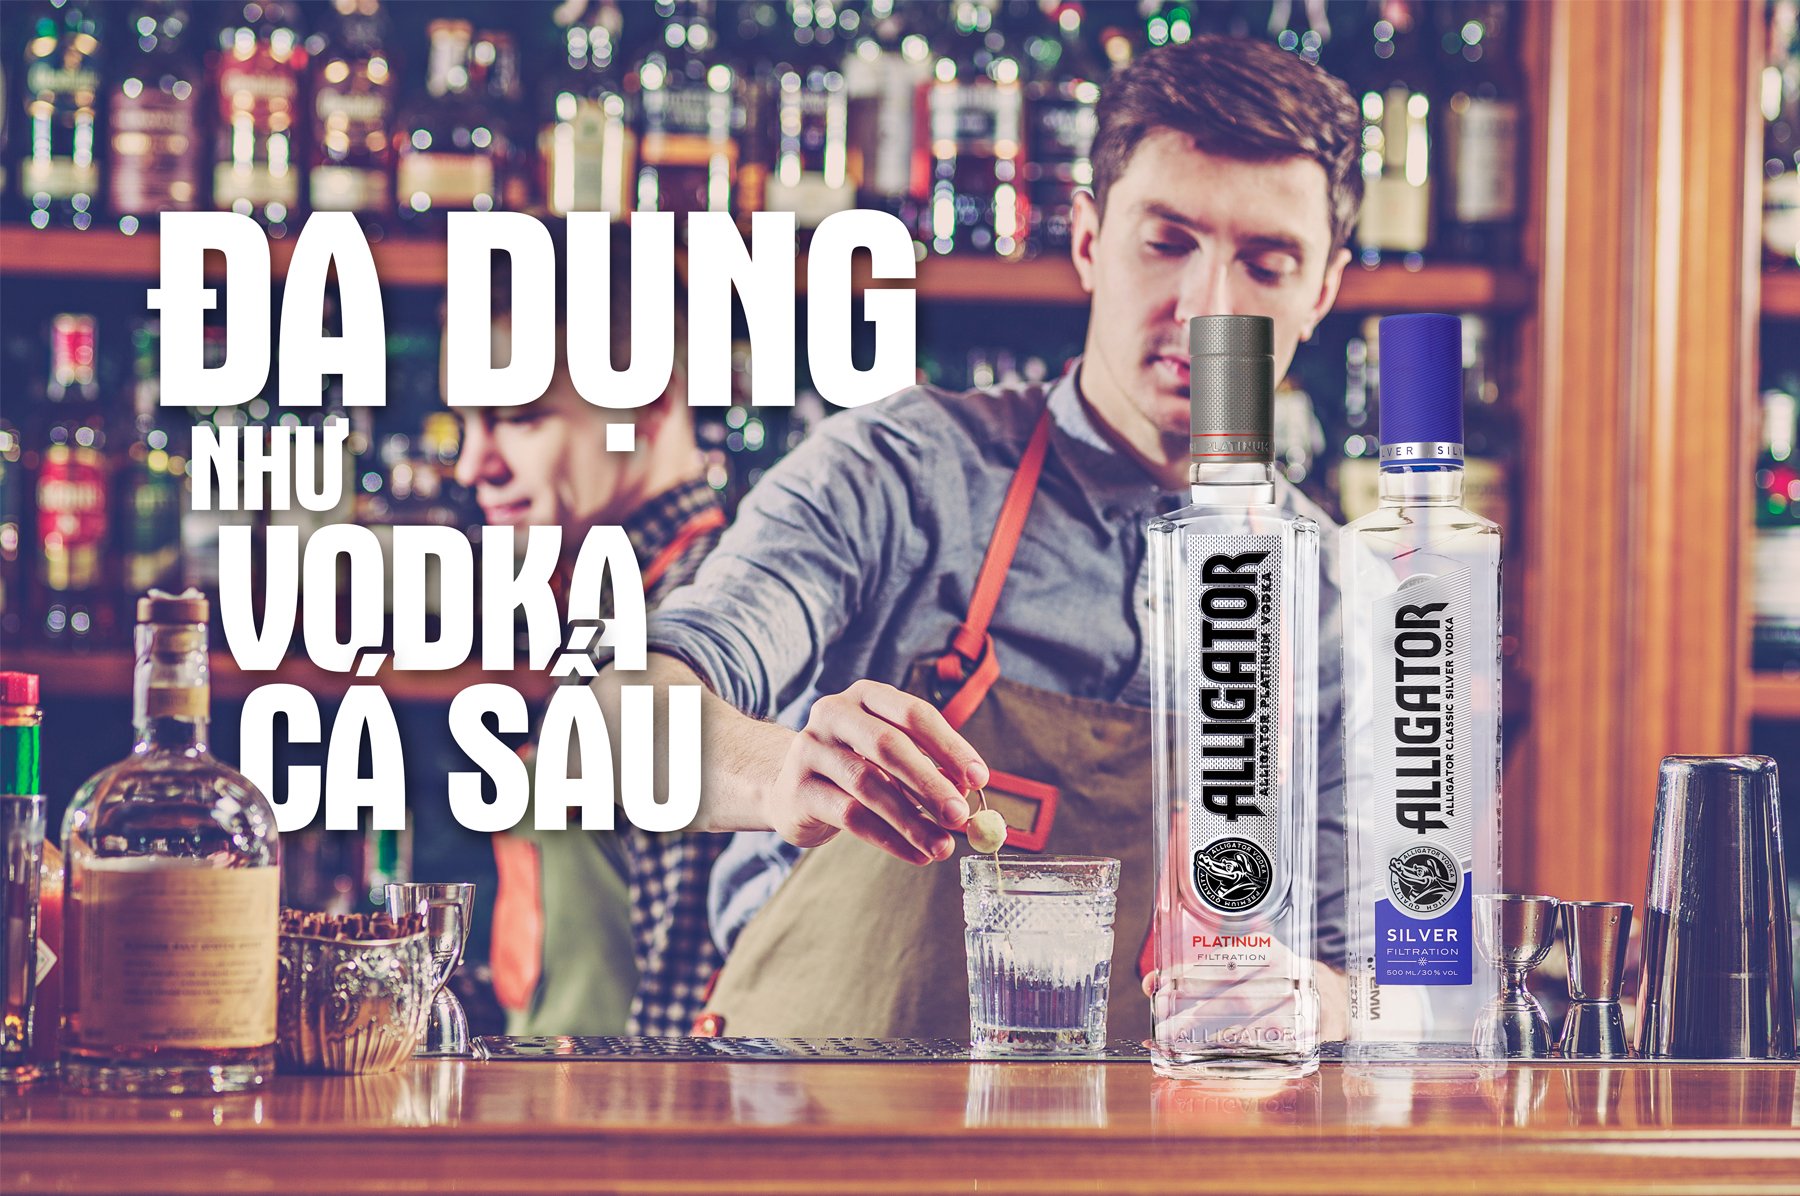 thuong-thuc-vodka-ca-sau-1